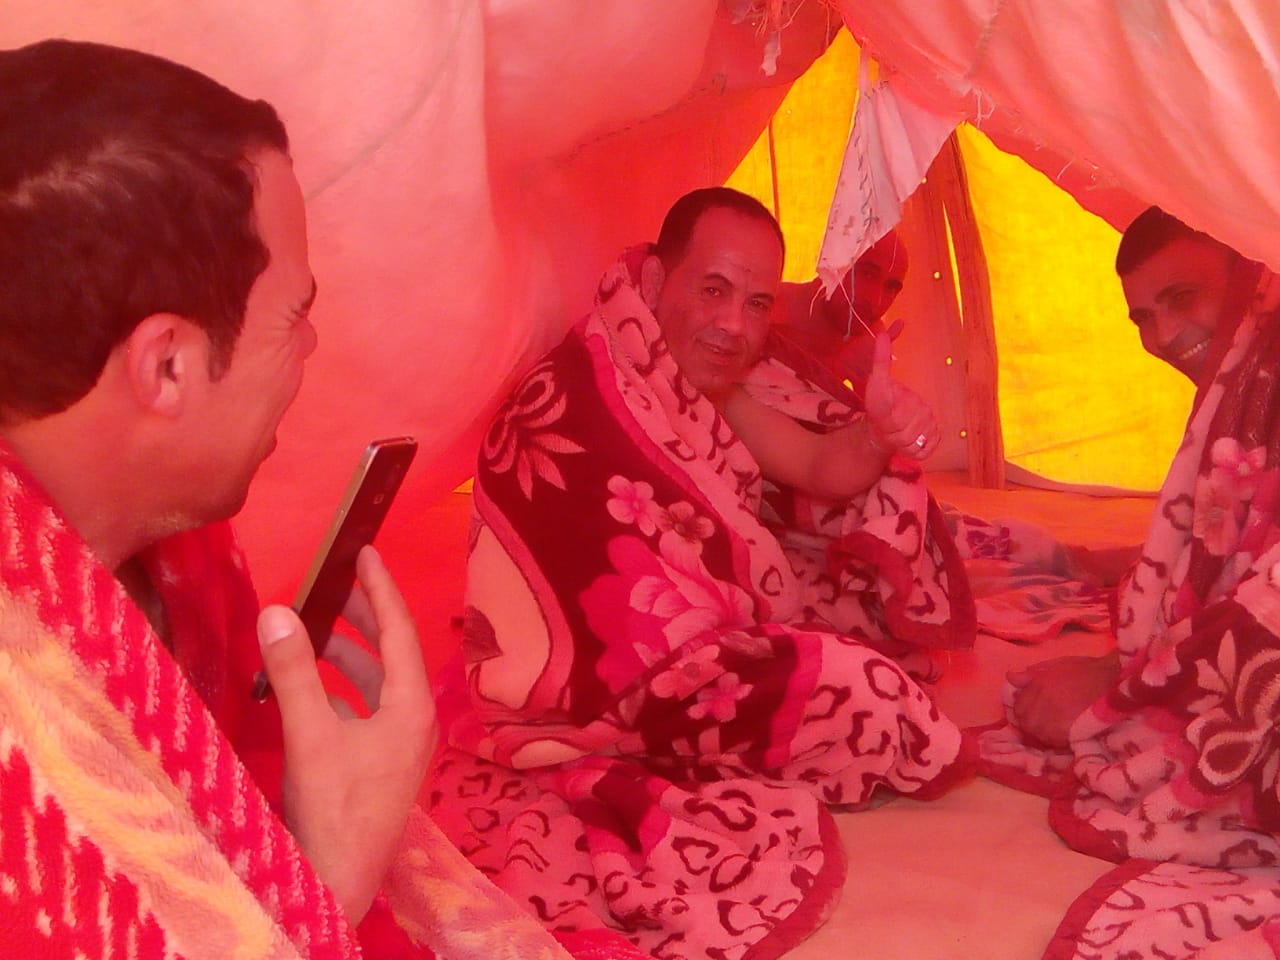 مجموعة من شمال سيناء داخل الخيمة عقب حمام الرمال فى سيوة